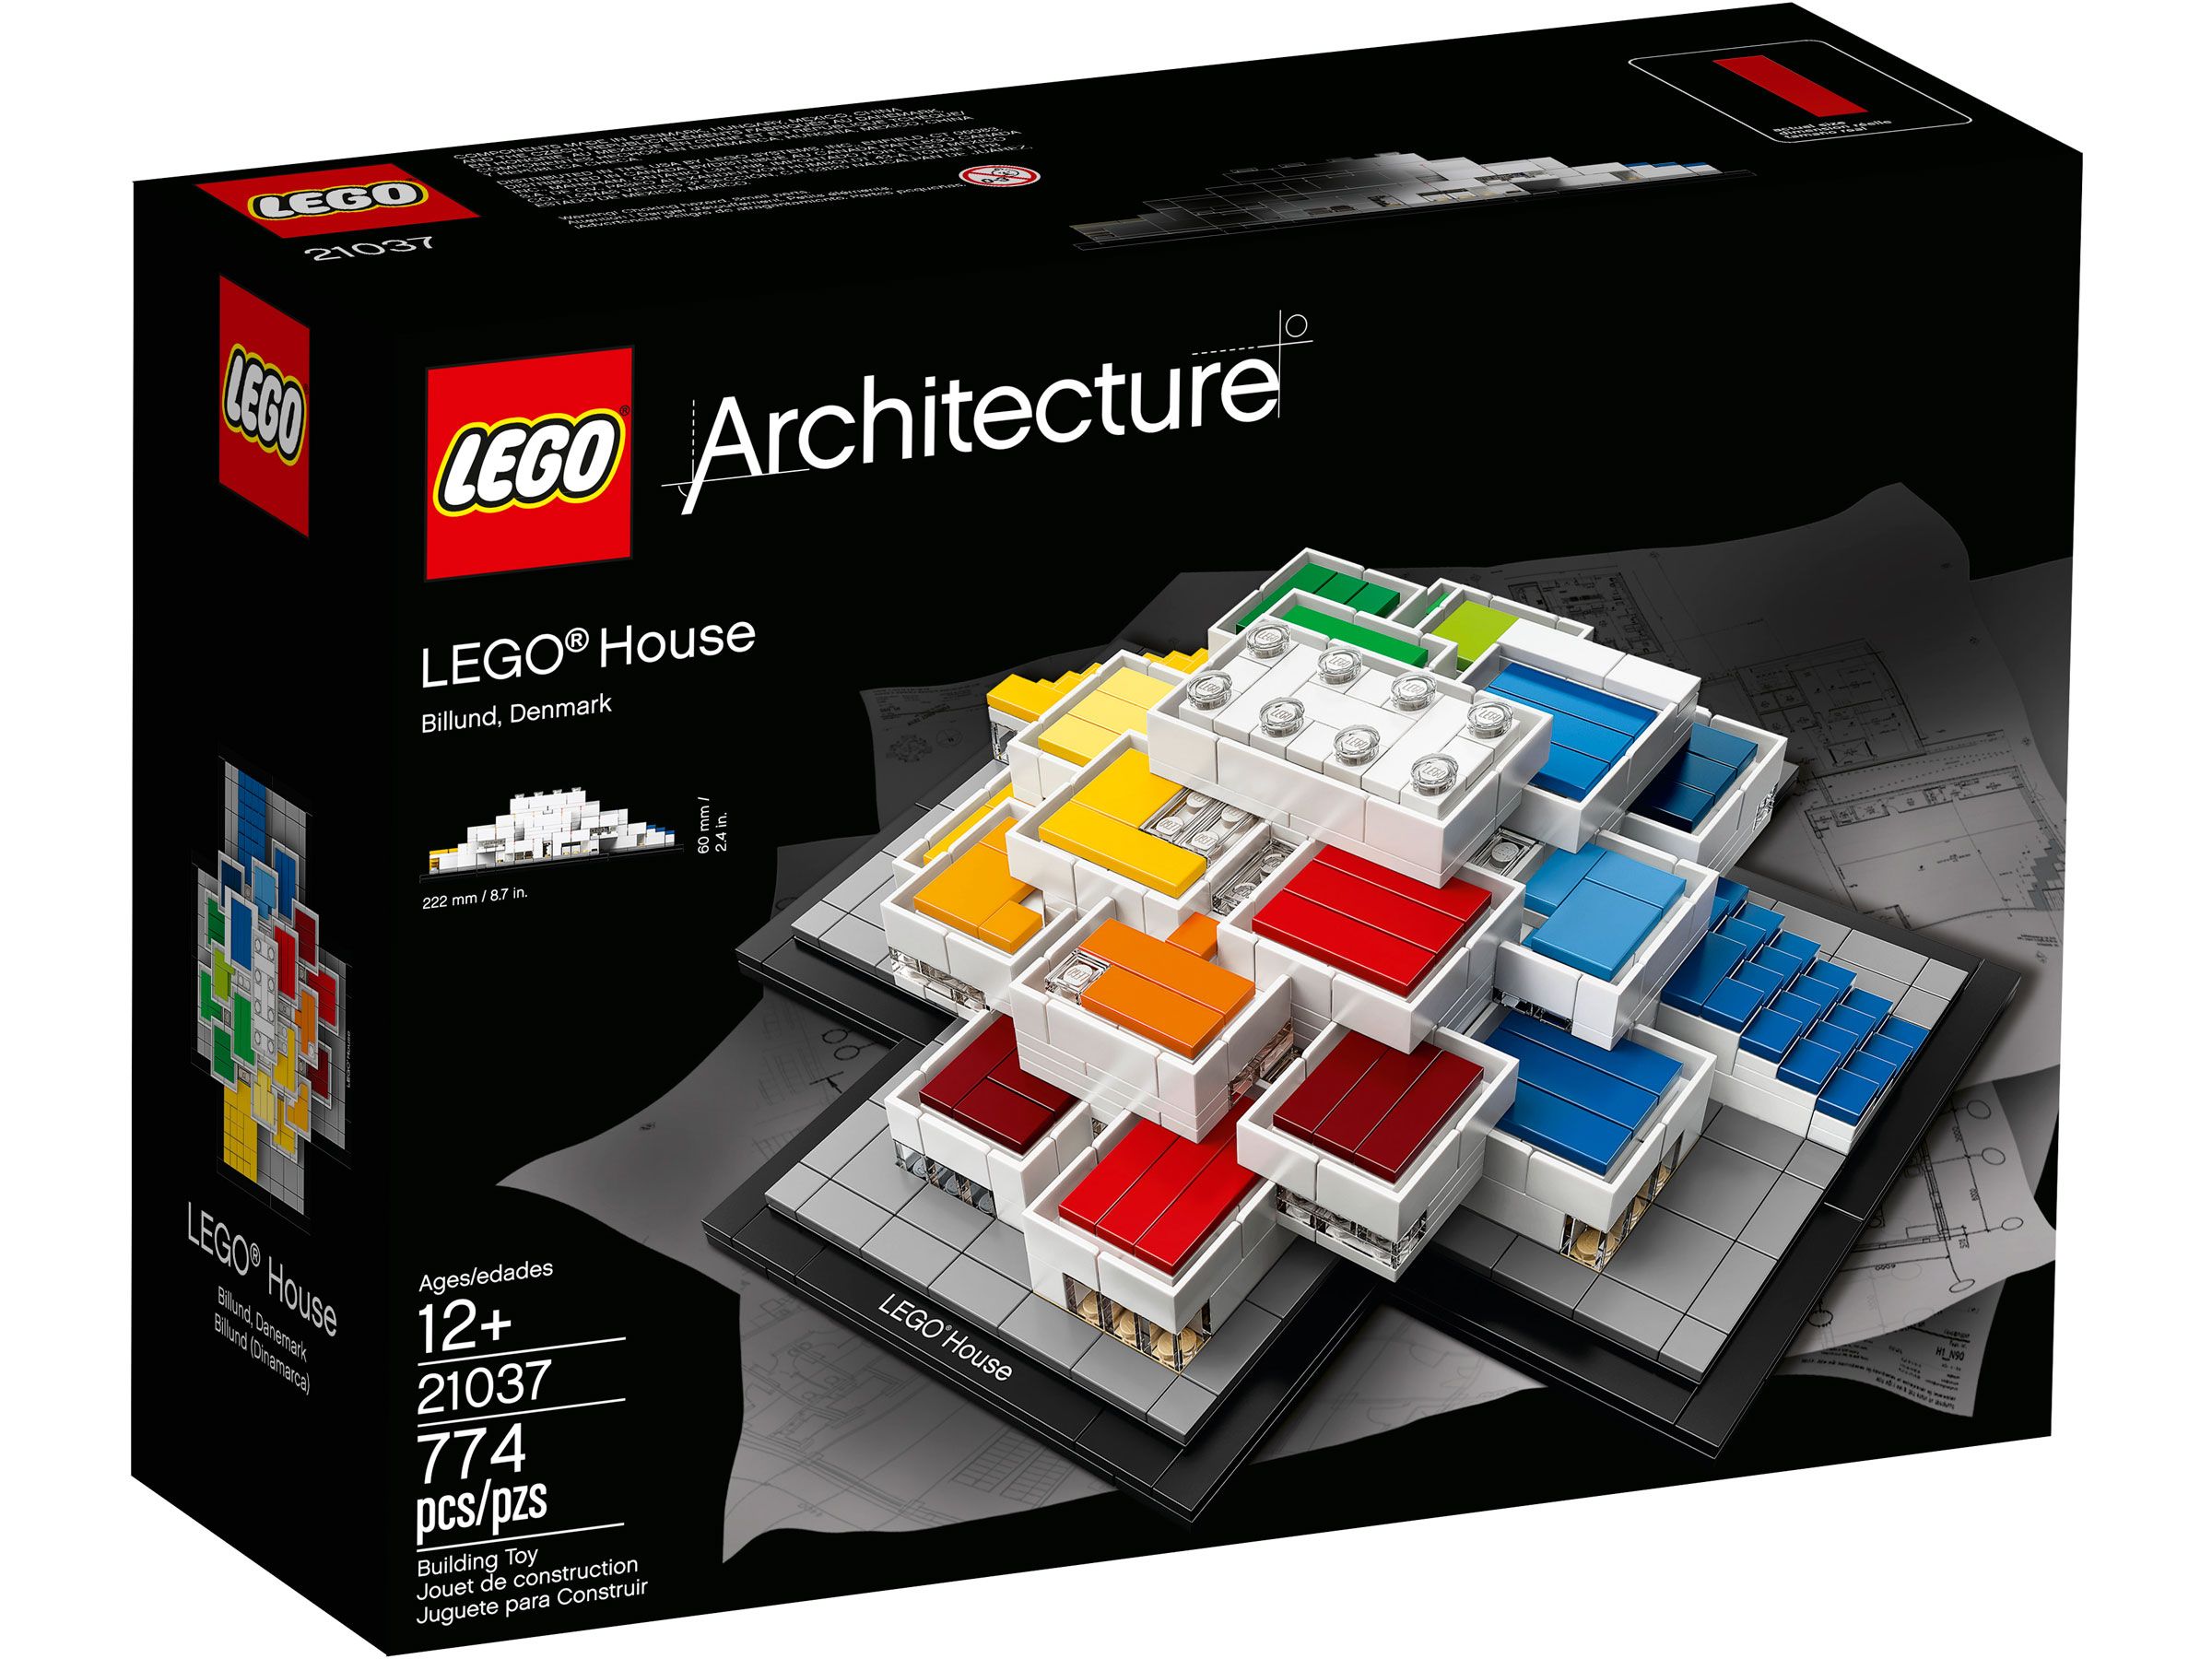 LEGO Architecture 21037 LEGO® House LEGO_21037_Box1_v39.jpg